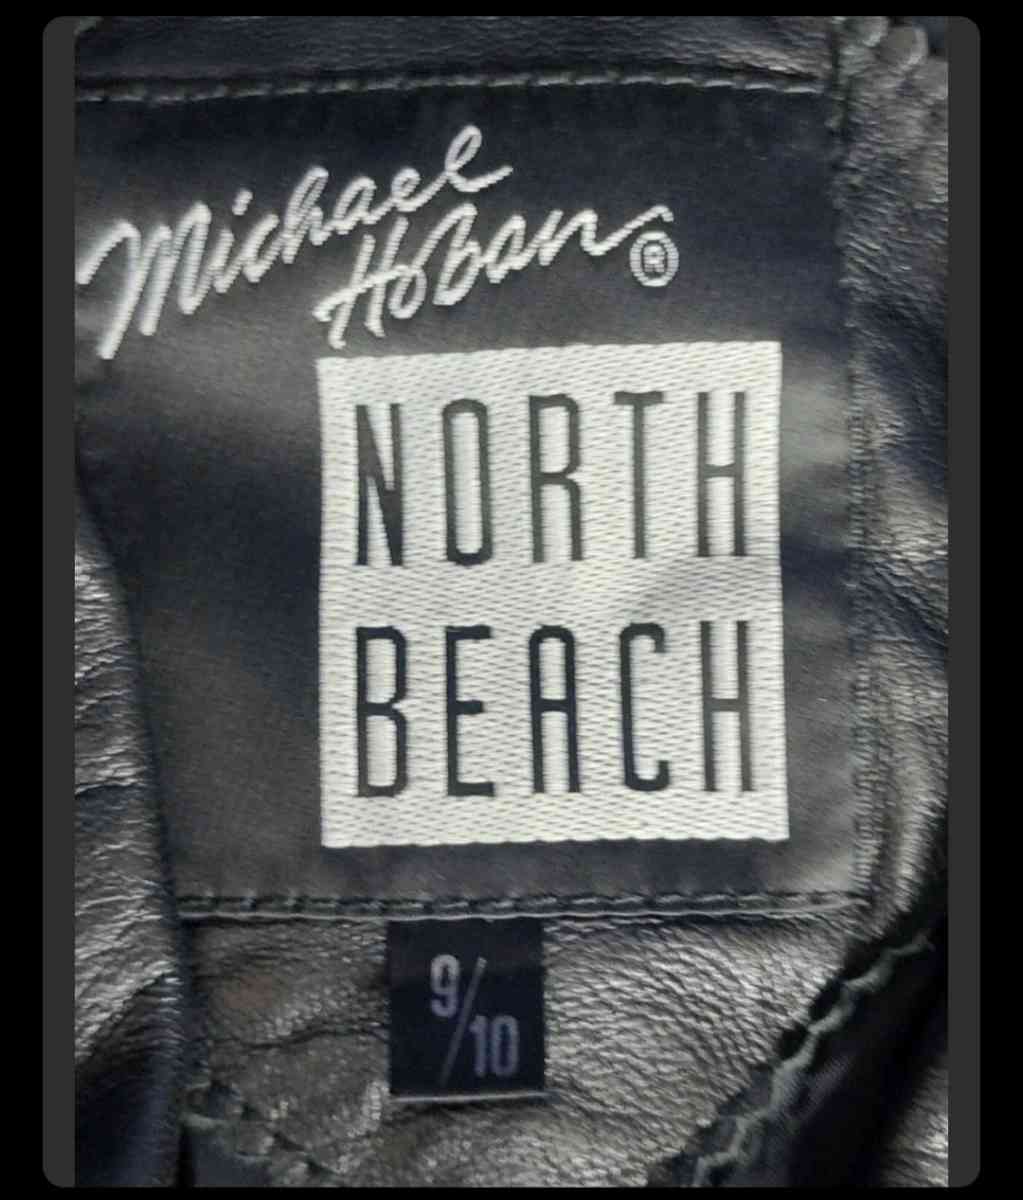 Michael Hoban Leather Jacket Ladies Vintage